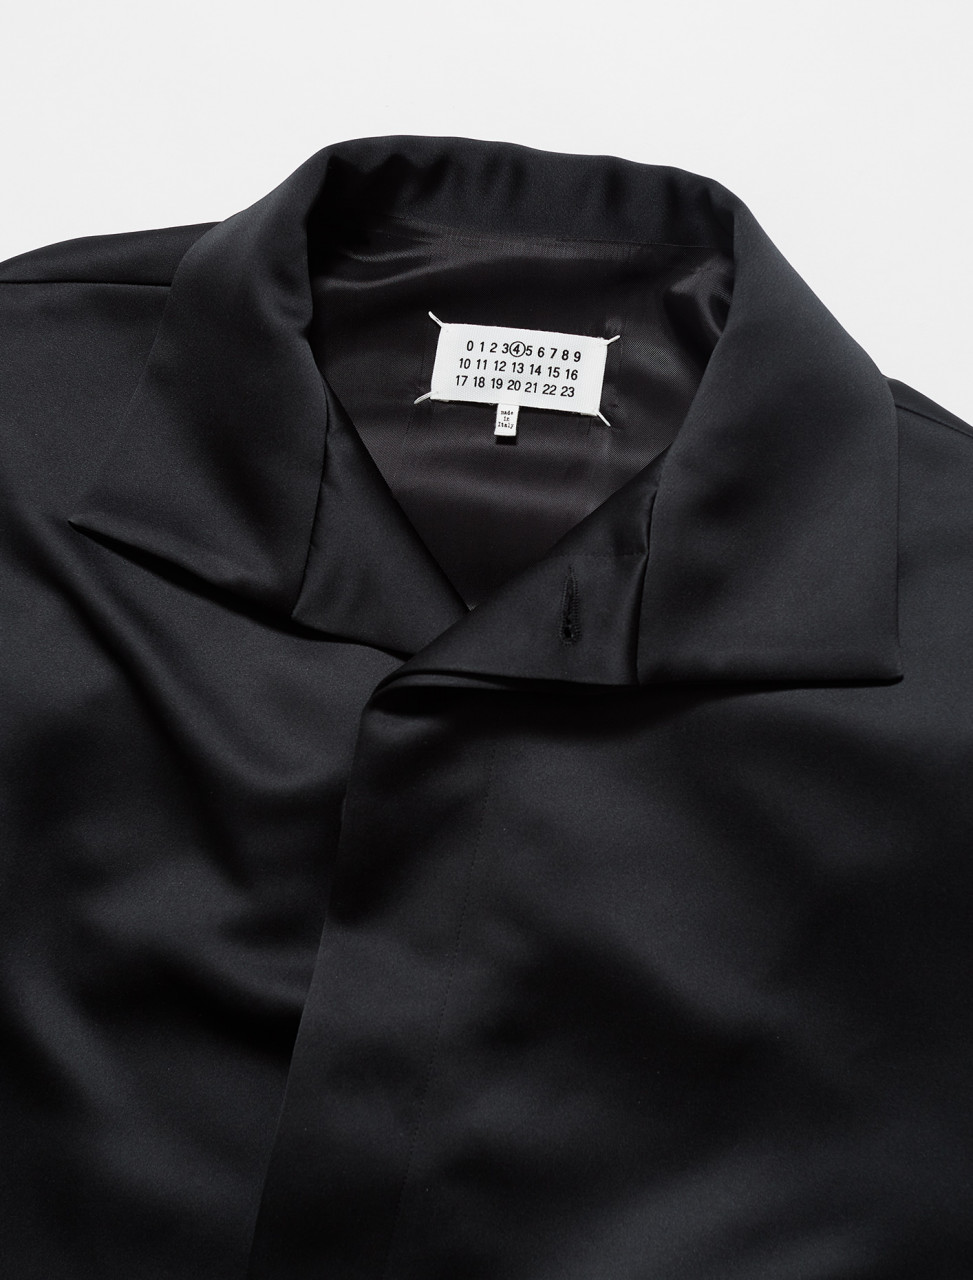 Maison Margiela Coat in Black | Voo Store Berlin | Worldwide Shipping